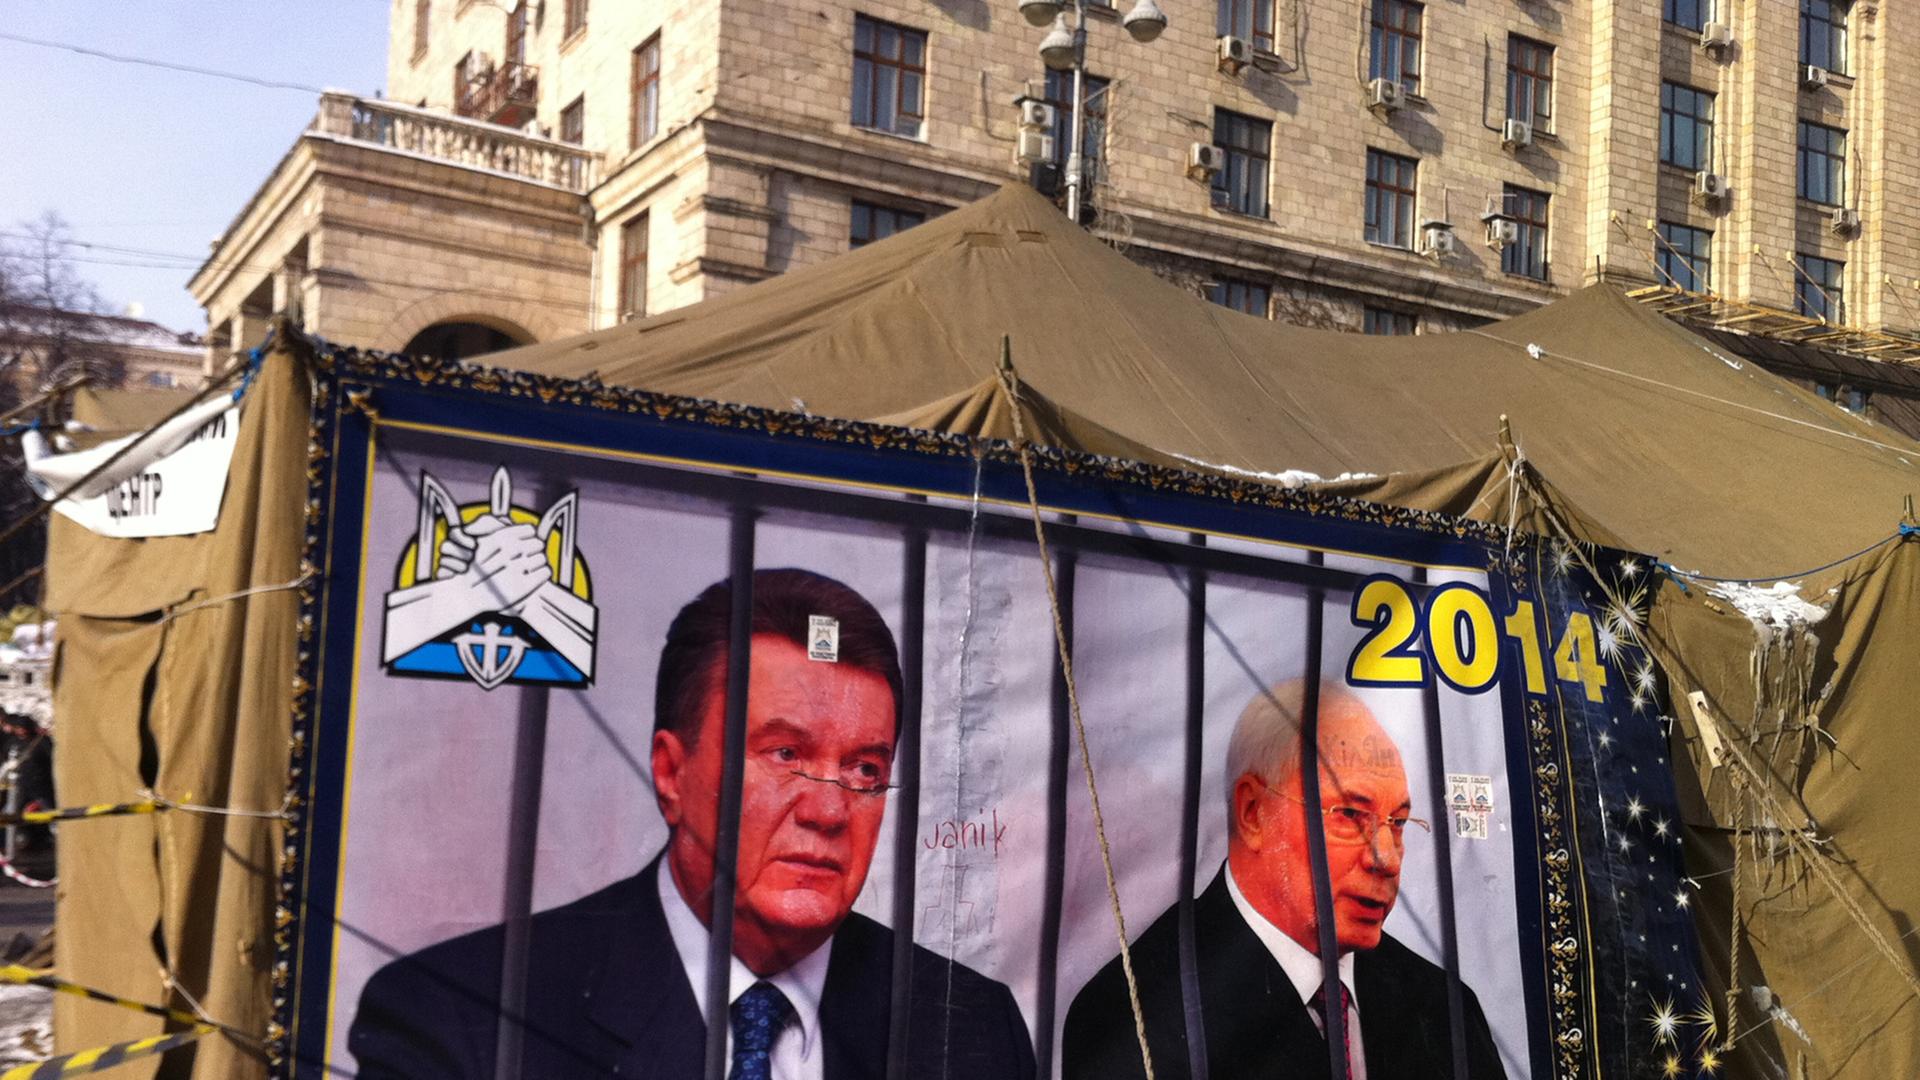 Präsident Janukowitsch und Regierungschef Asarow (r) werden am 26.01.2014 an einem Zelt auf dem Prachtboulevard Kreschtschatik in Kiew, Ukraine, hinter Gittern dargestellt.